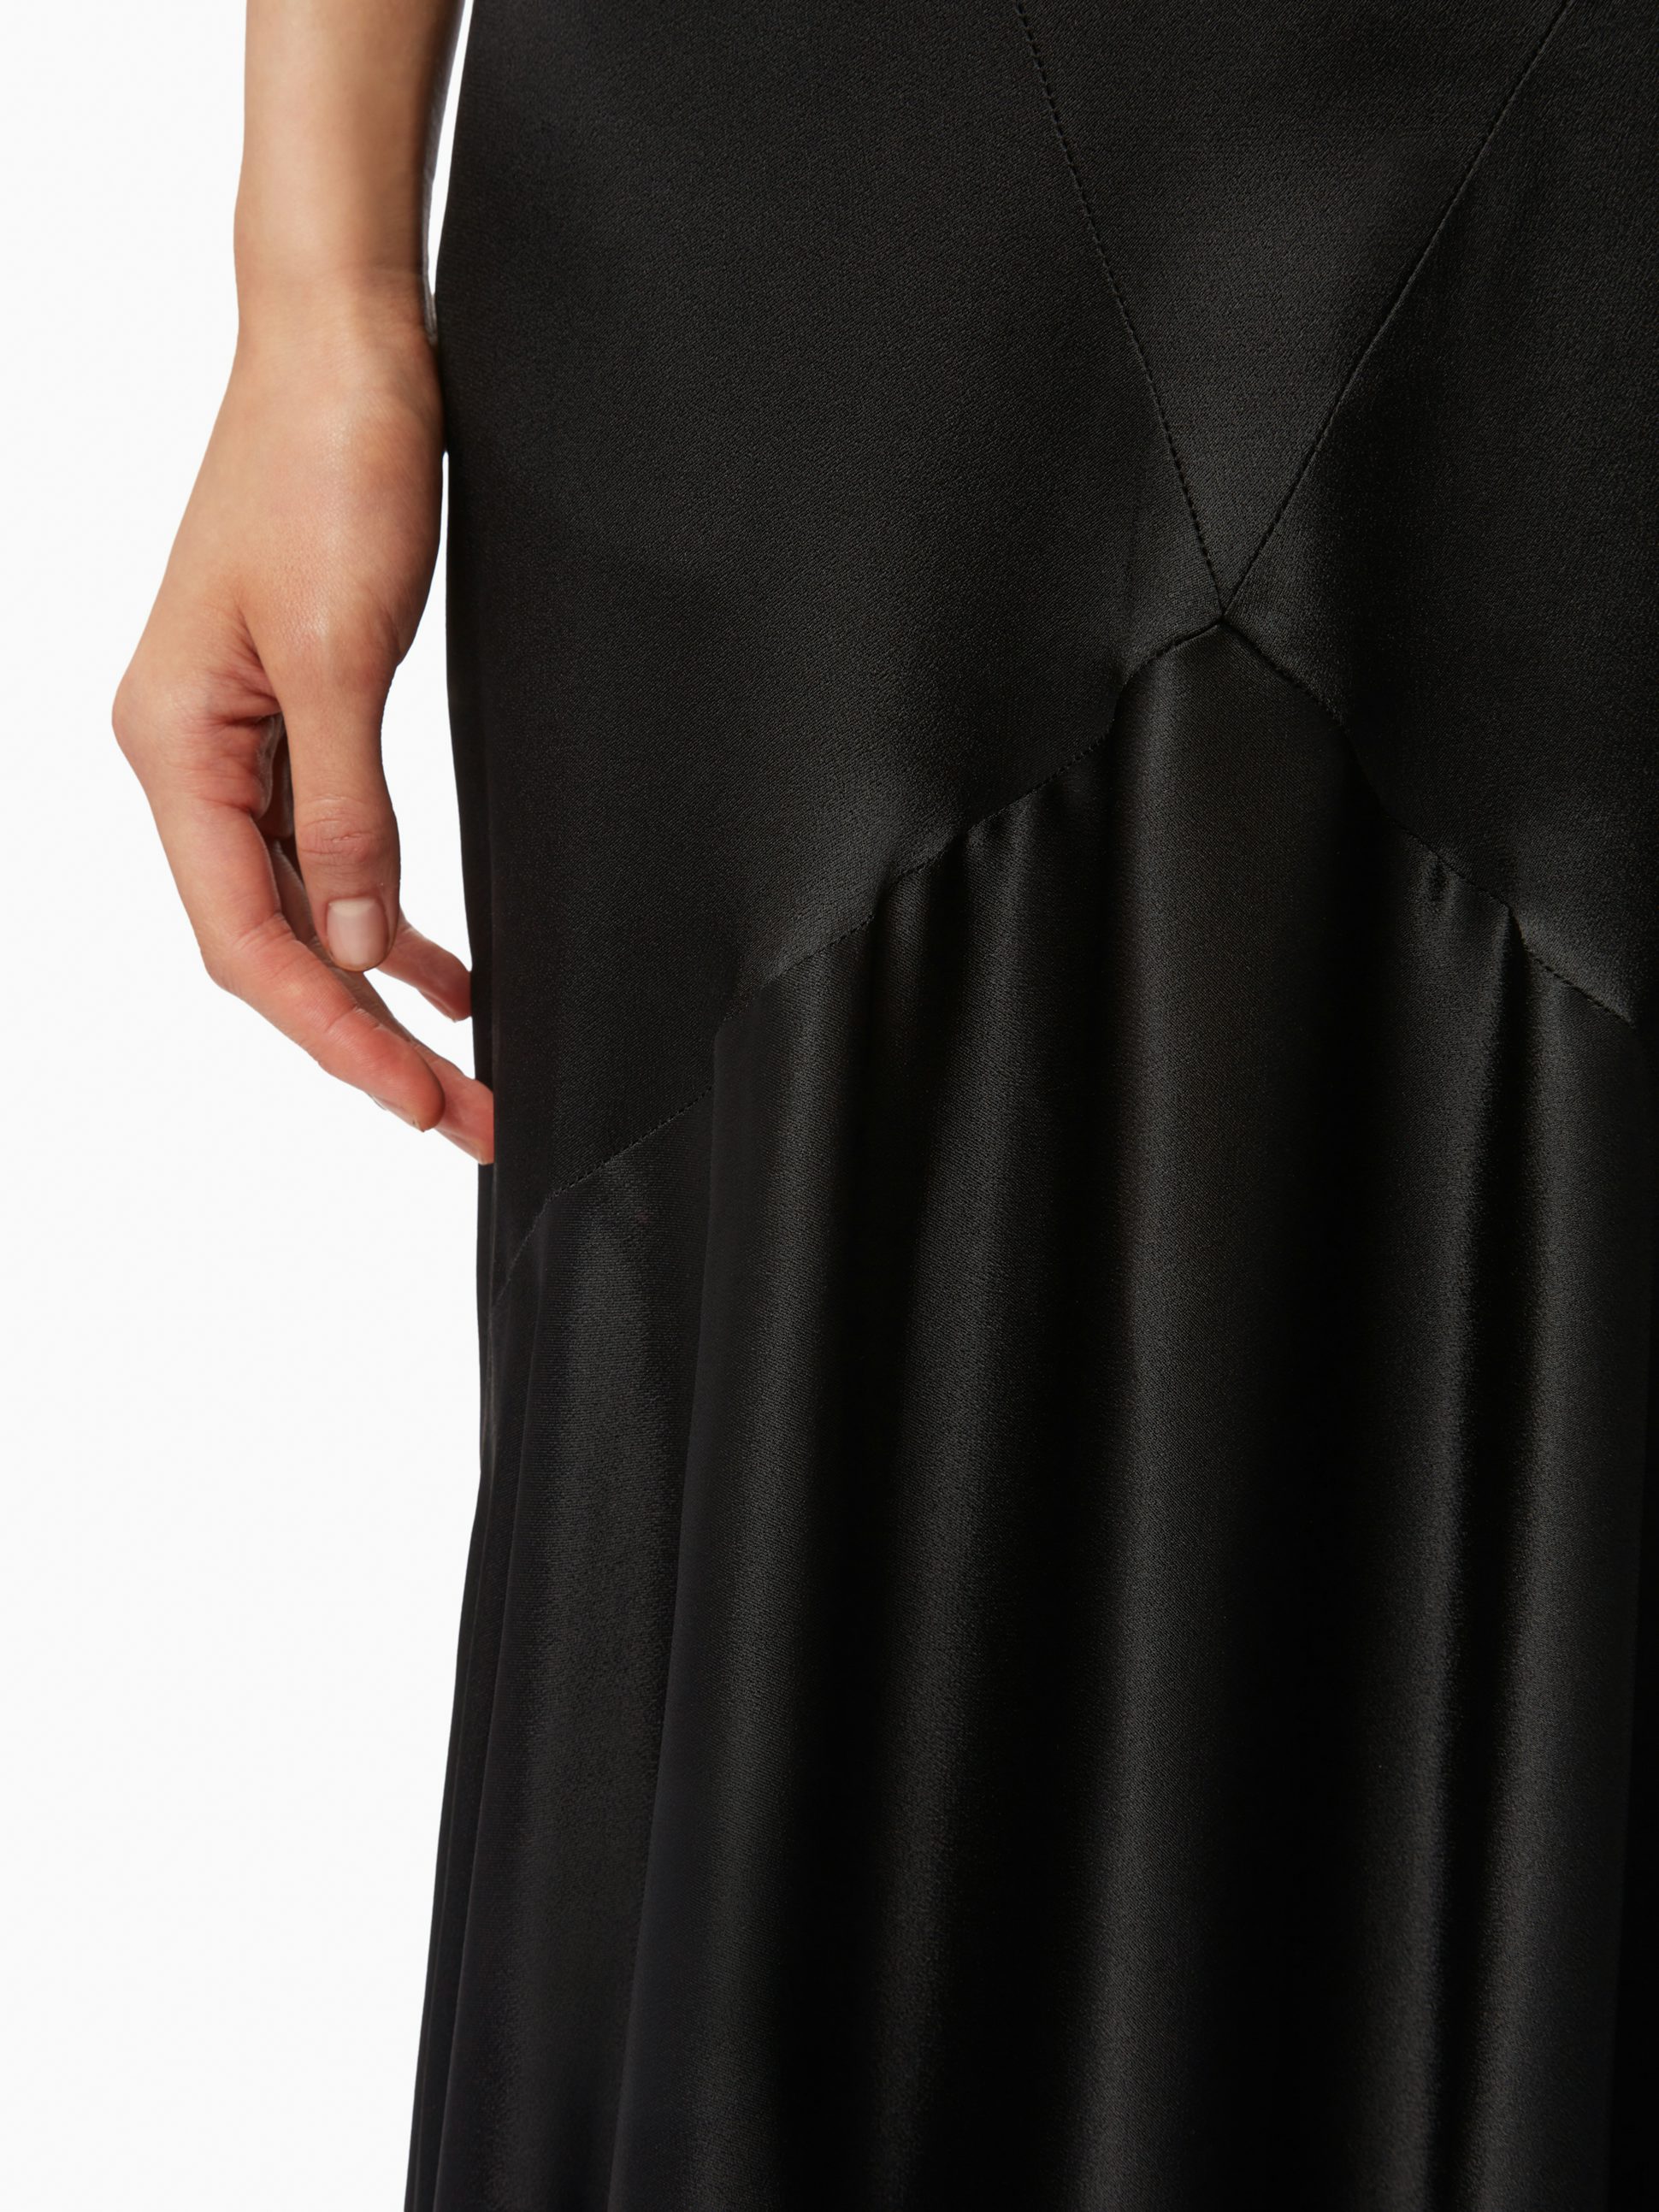 Long bias cut skirt in black - Nina Ricci